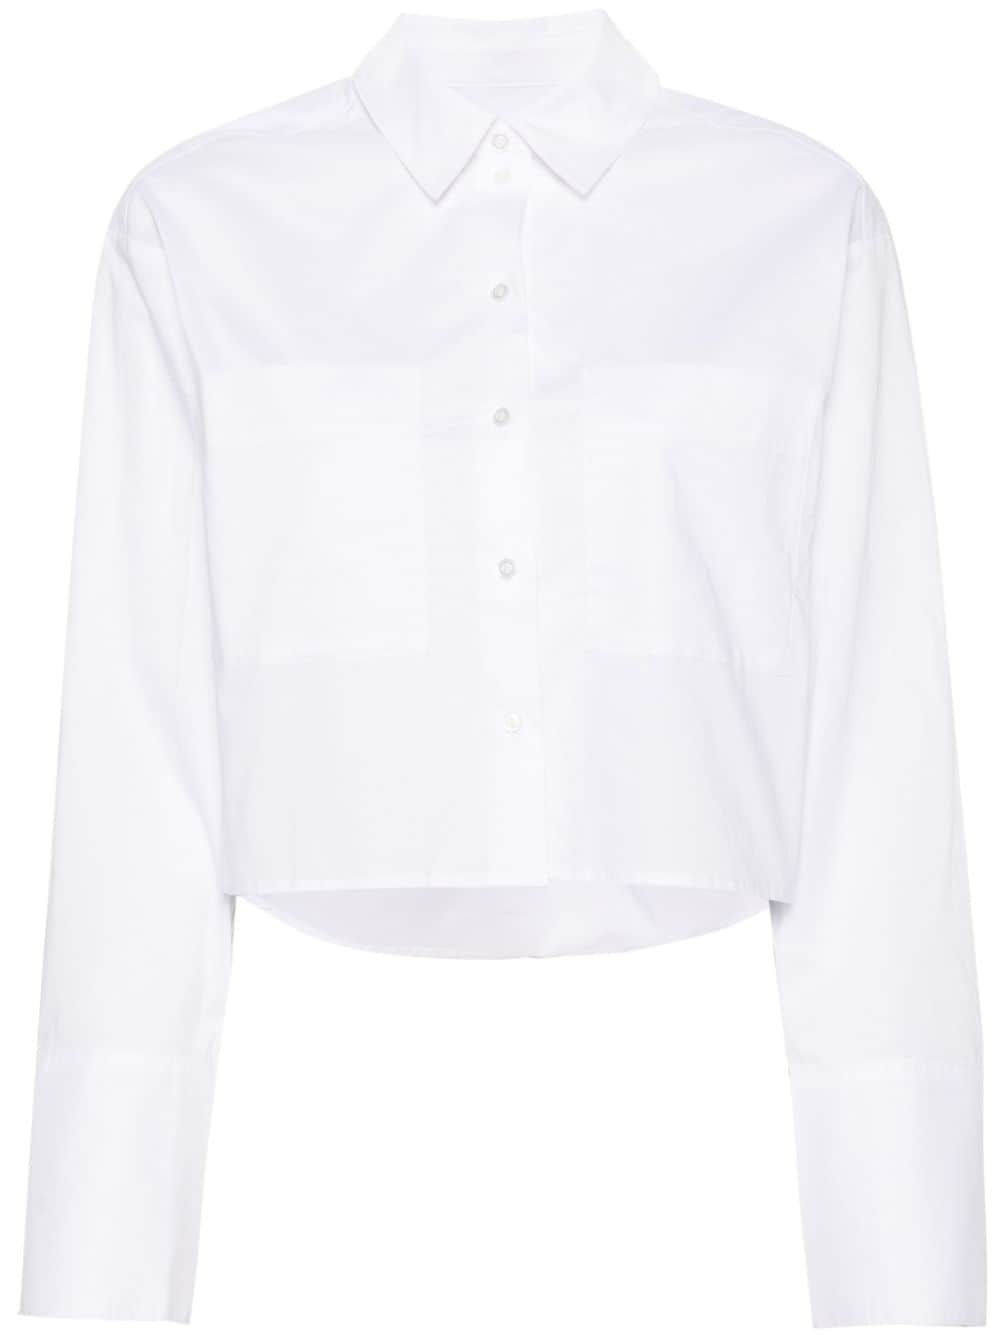 Herskind Samuel Cotton Shirt In White